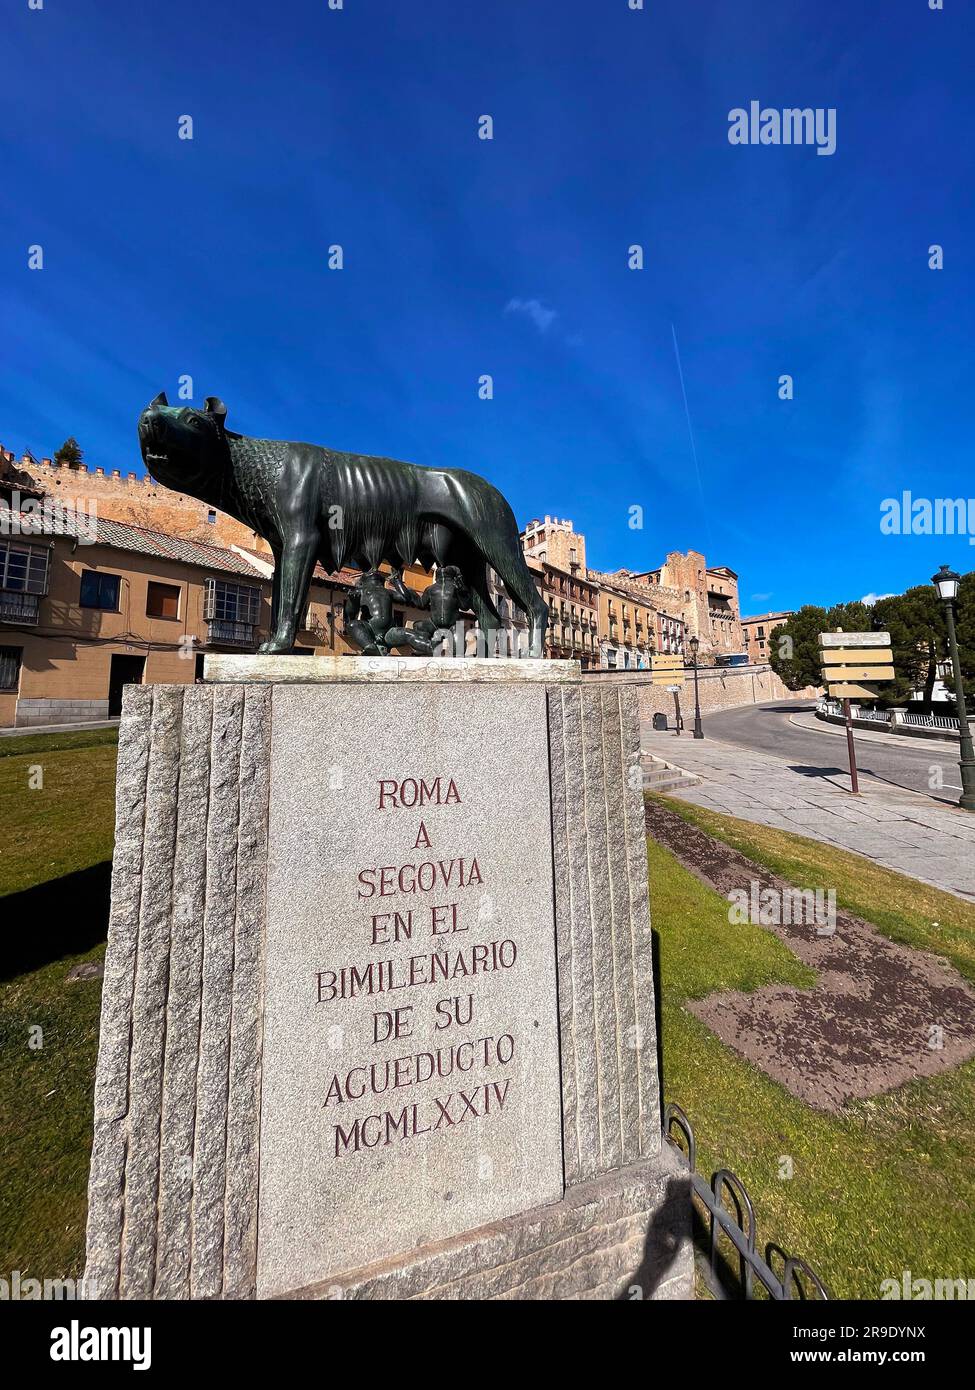 Segovia, Spagna - 18 febbraio 2022: La statua del lupo Capitolino sotto l'acquedotto romano a Segovia. La statua simboleggia Roma e l'Impero Romano. Foto Stock